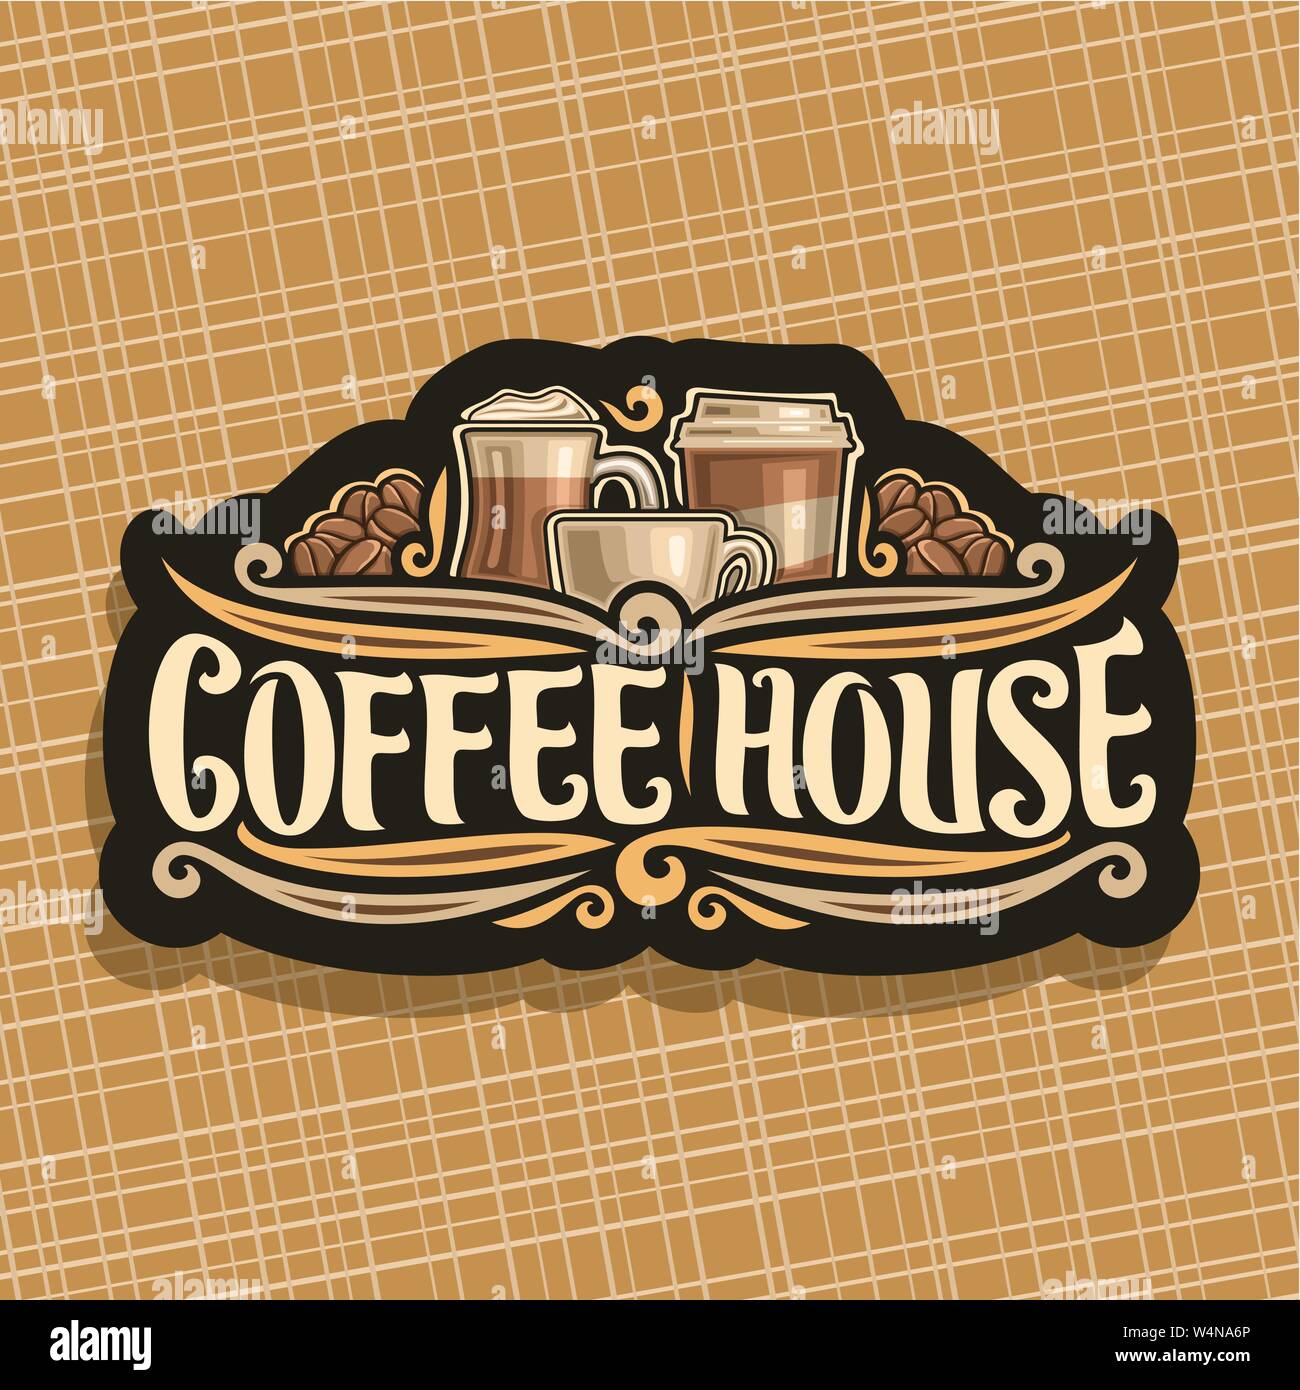 Vector logo for Coffee House Stock Vector